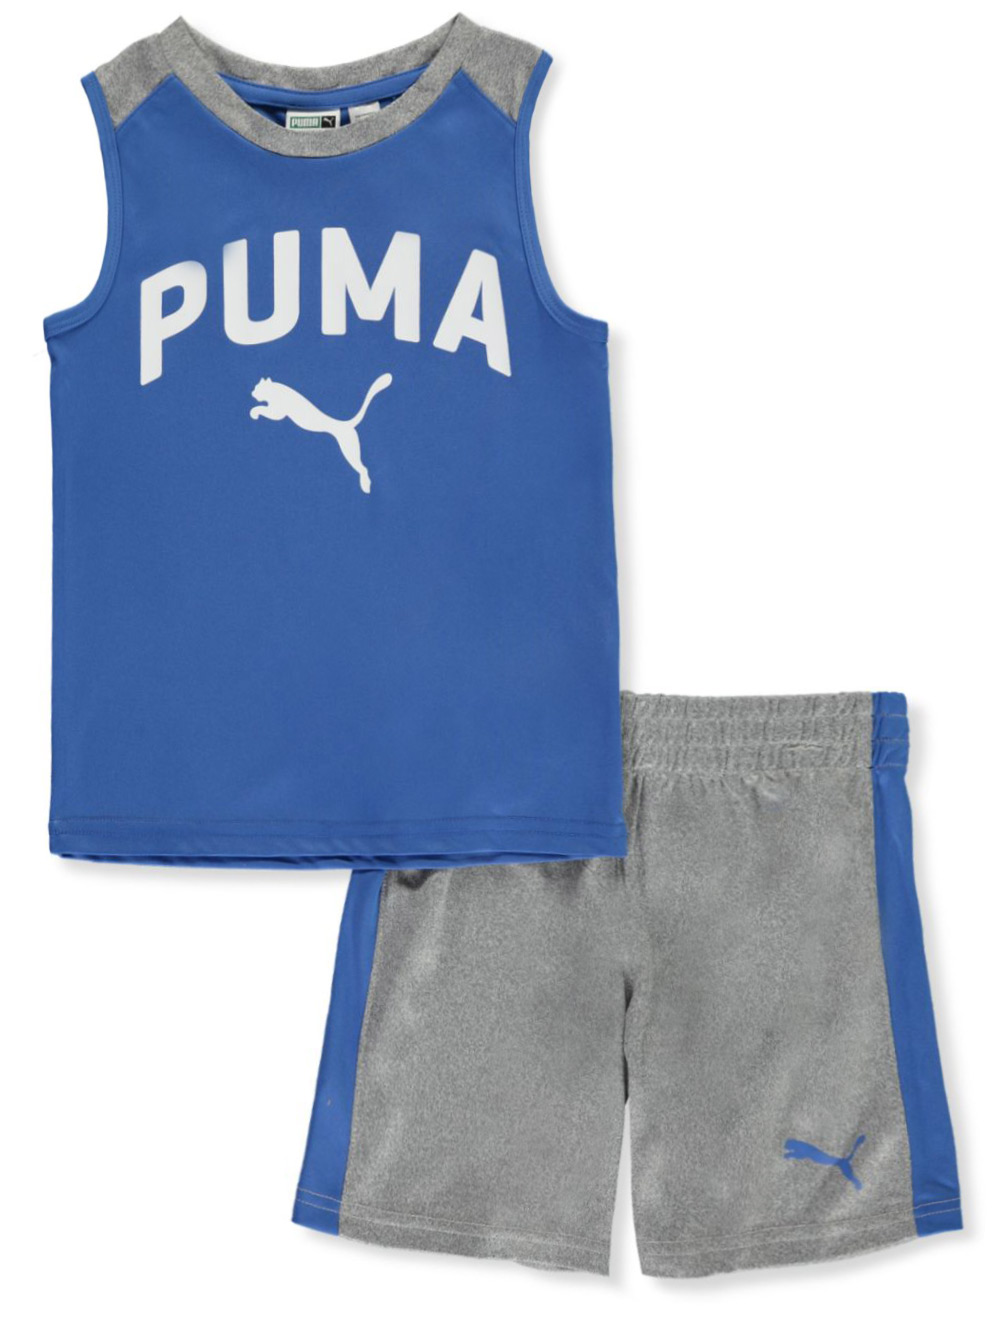 puma boys outfit